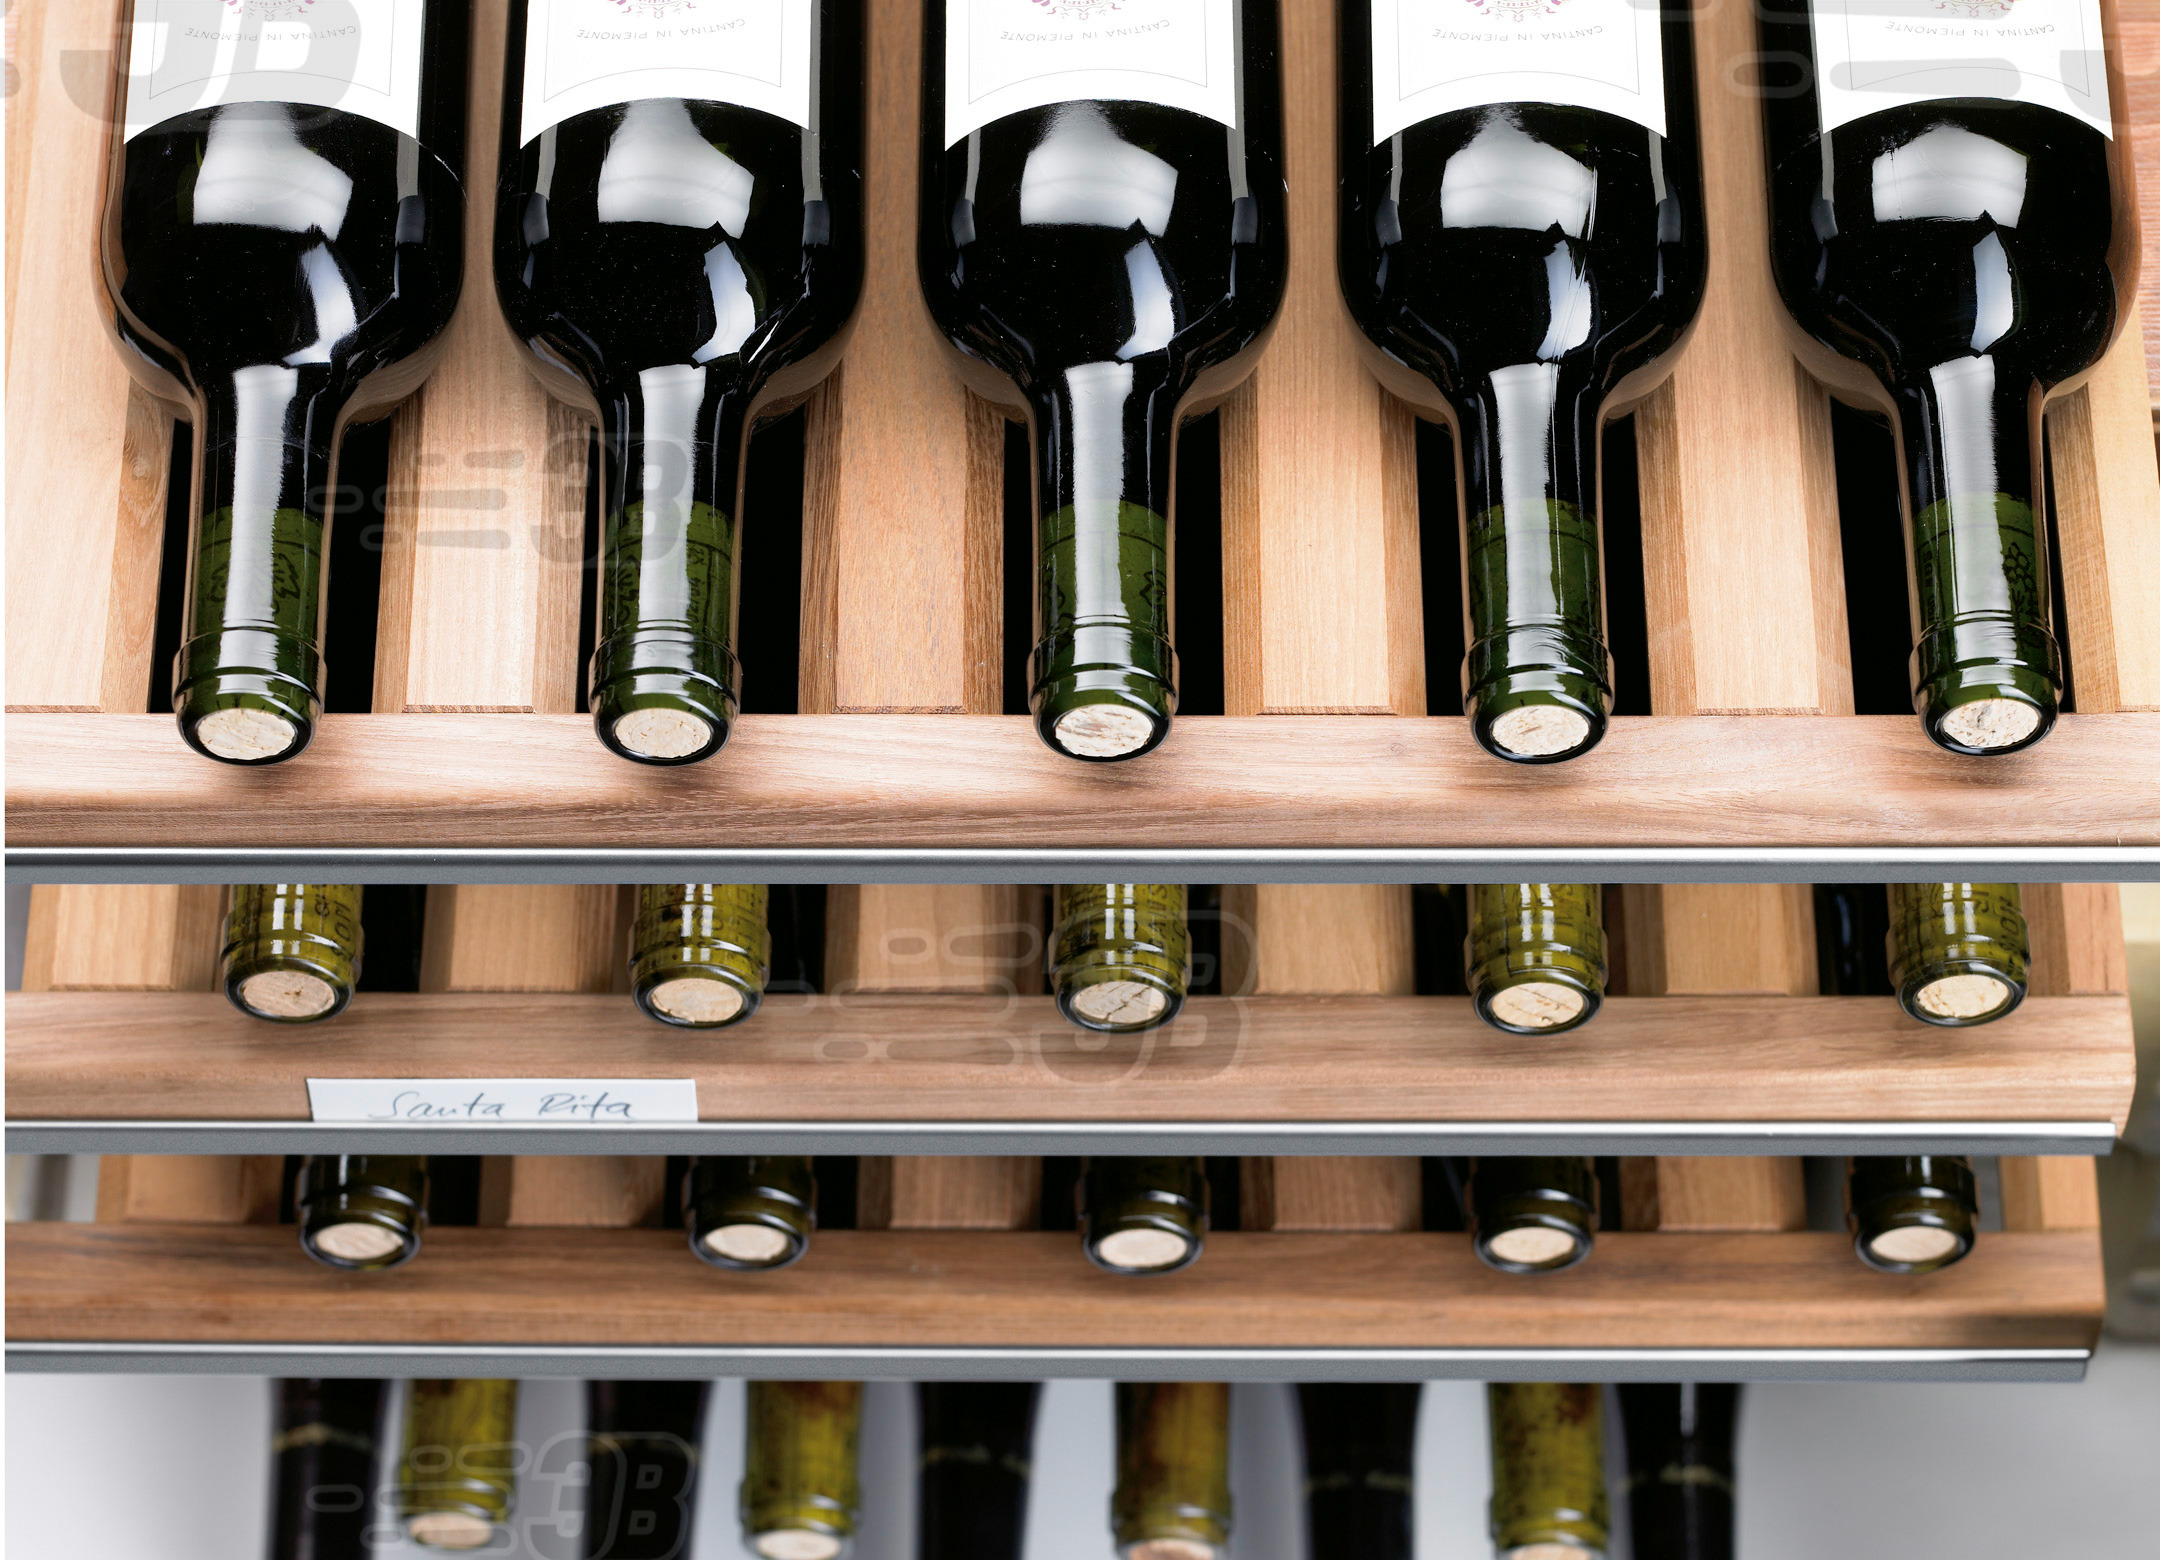 Взагалі закрите вино в залежності від вище описаних параметрів можна зберігати від 2 до 100 років